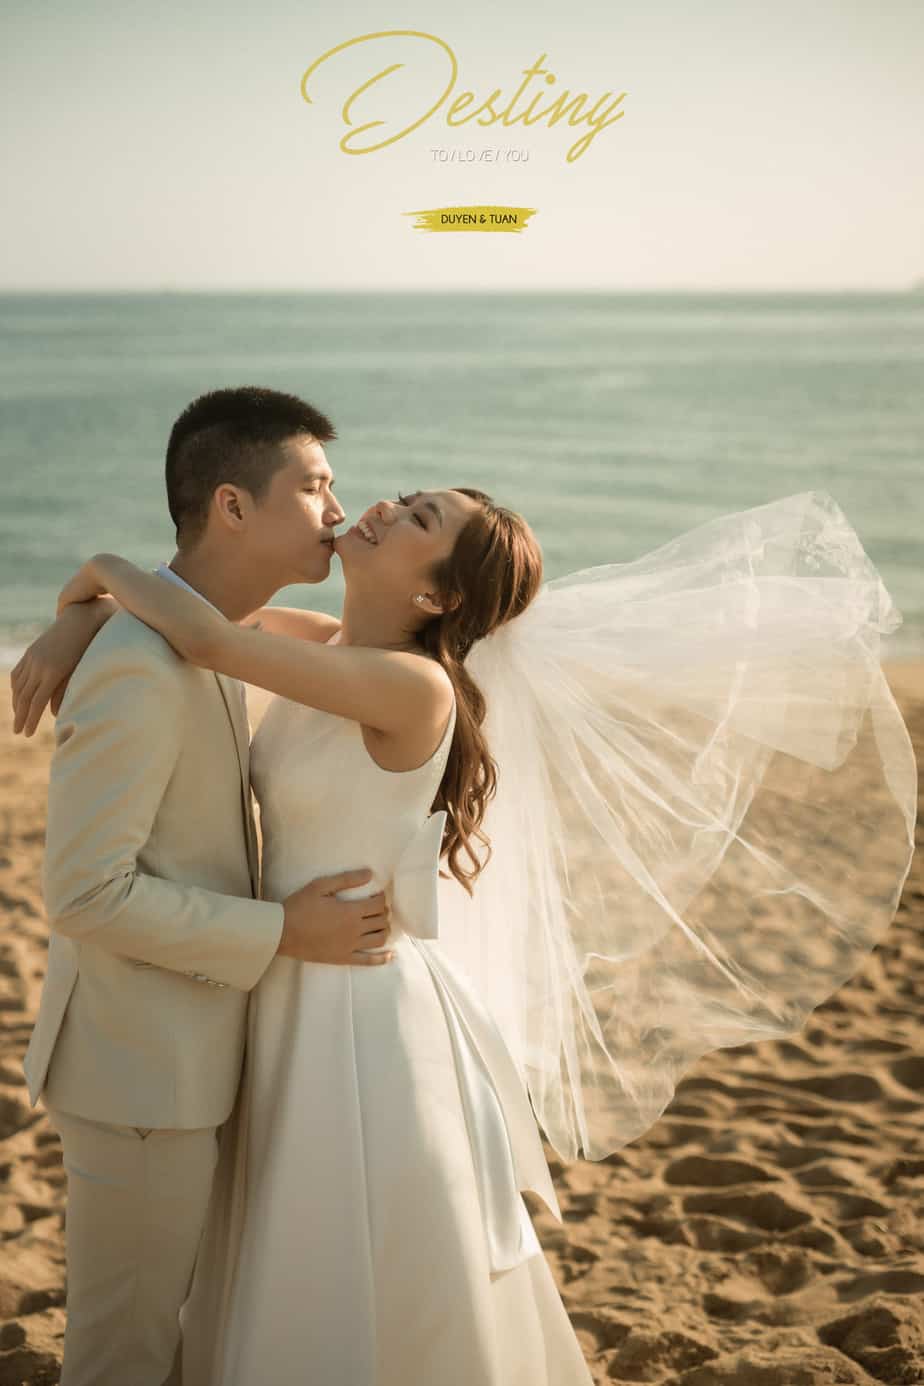 XOÀI WEDDINGS - Chụp ảnh cưới Nha Trang (2)